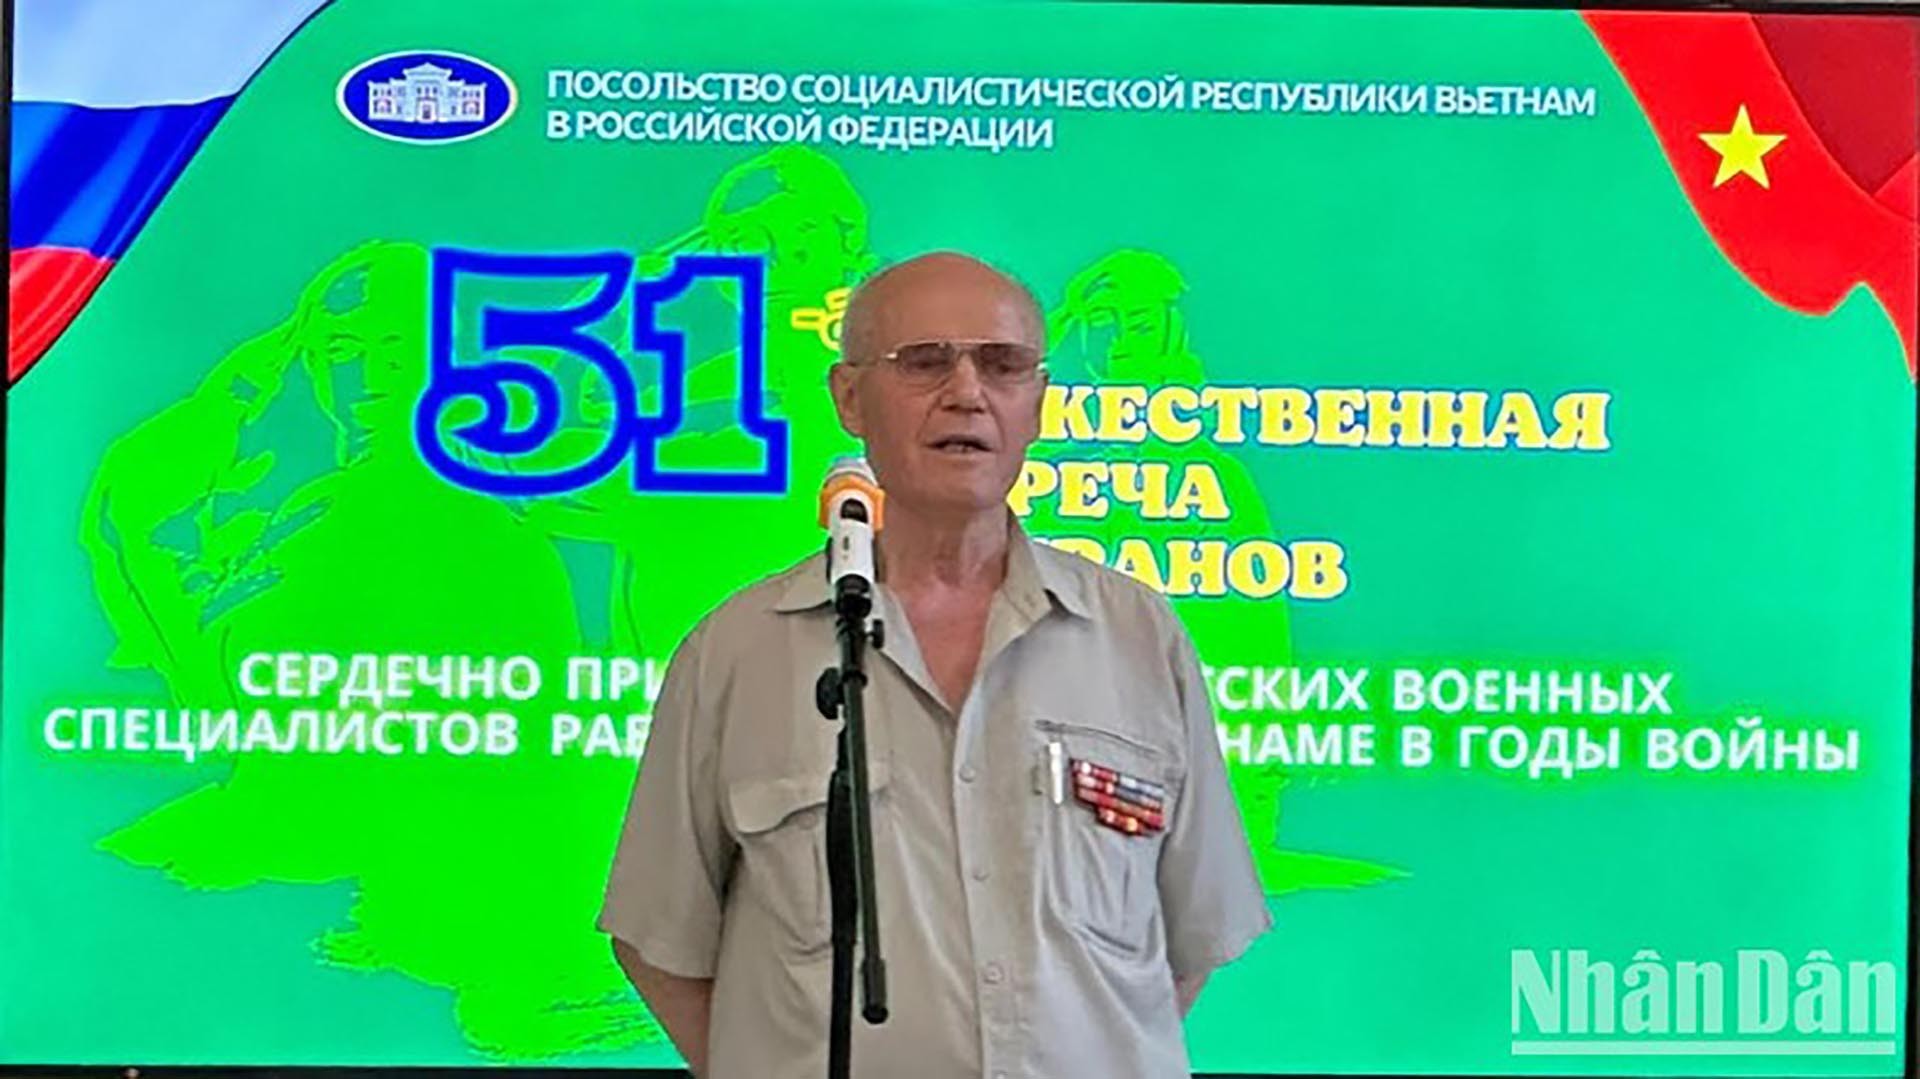 Chủ tịch Hội cựu chiến binh Nga từng công tác tại Việt Nam Nikolai Kolesnik. (Nguồn: nhandan.vn)